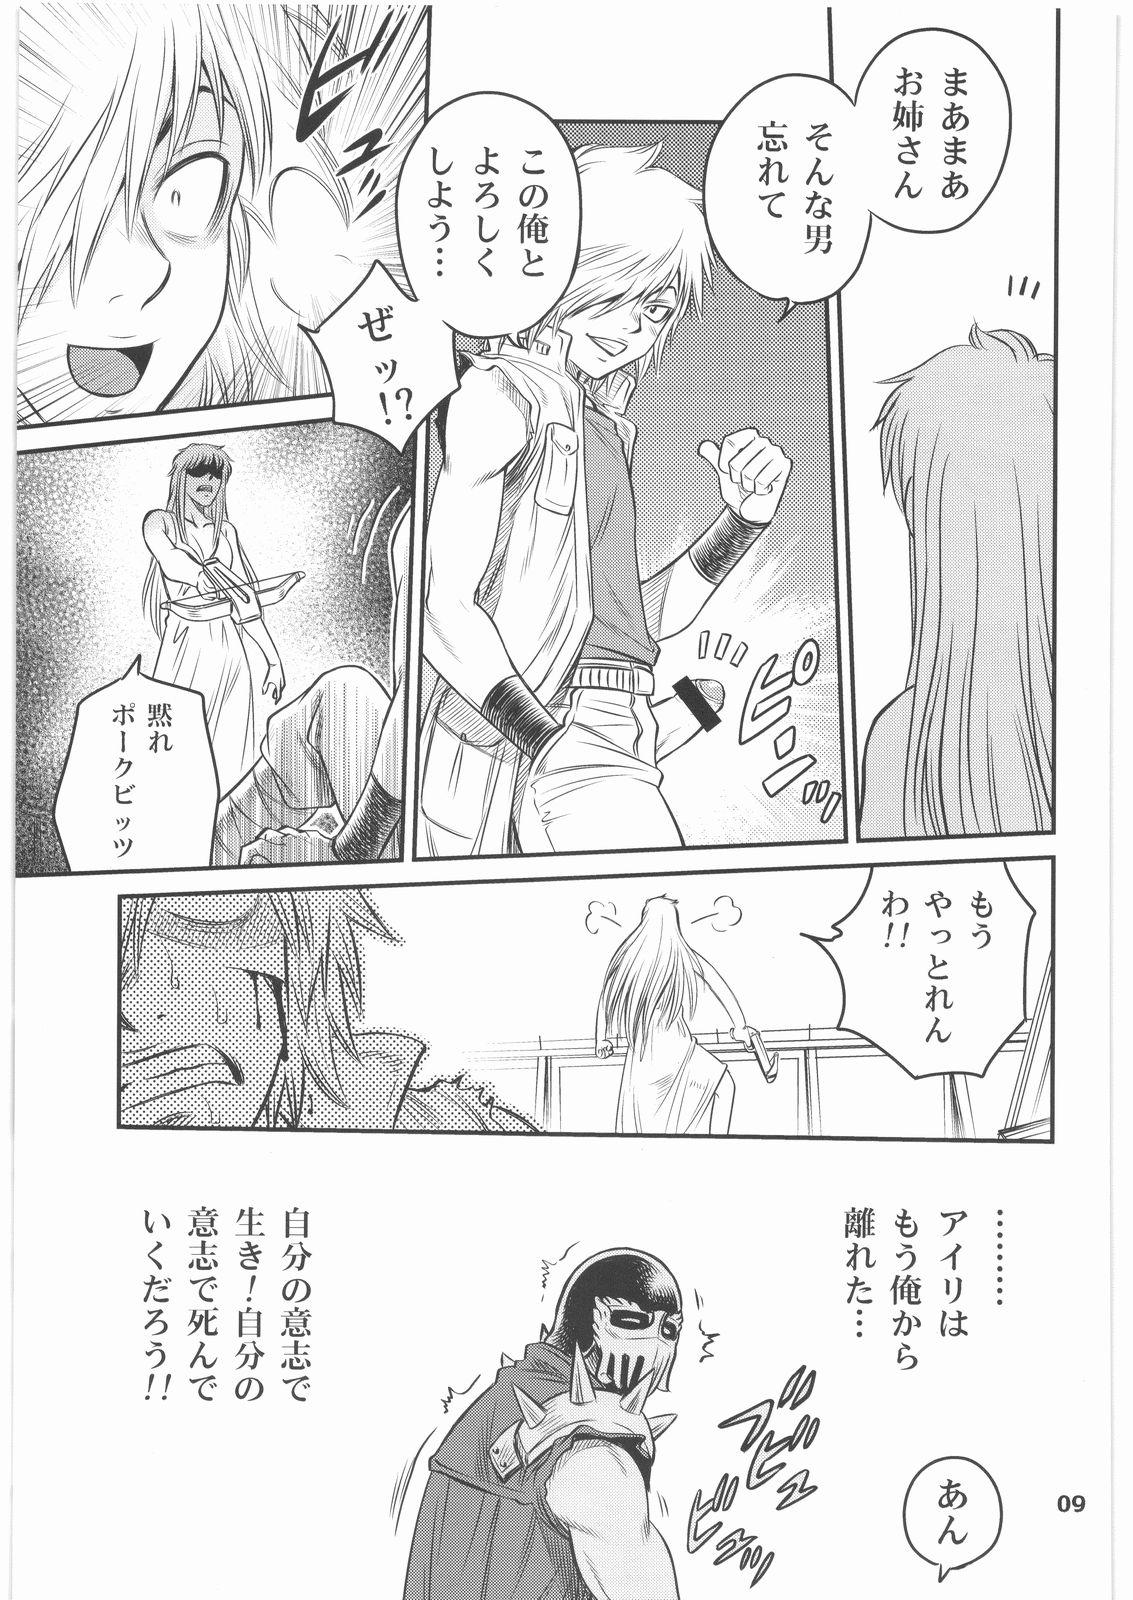 Amatuer Seikimatsu Tetsu Kamen Densetsu 2 - Fist of the north star Raw - Page 8